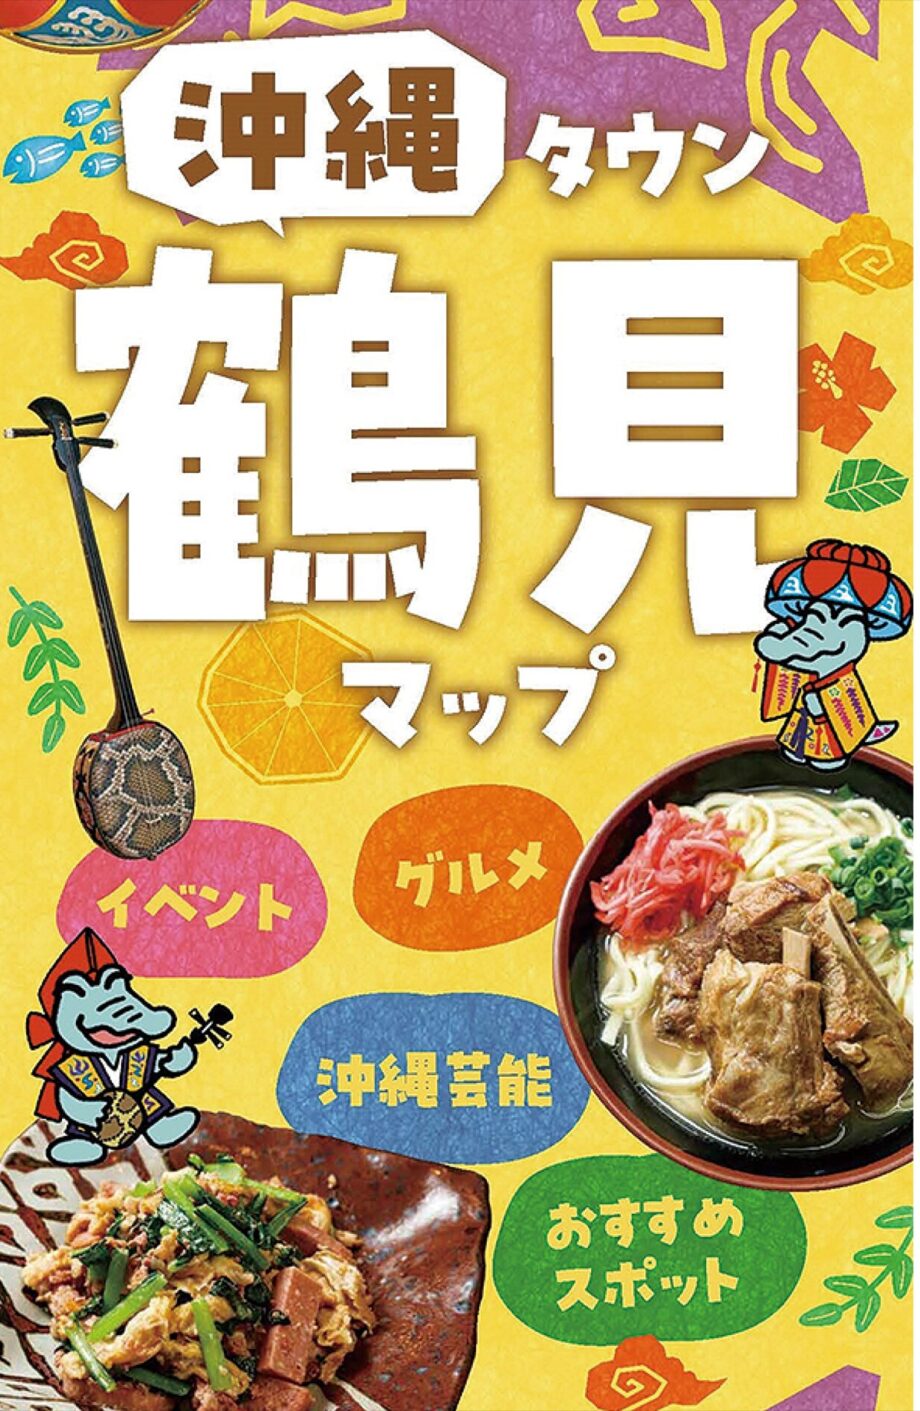 「沖縄タウン鶴見マップ」配布始まる　飲食店や芸能団体などを紹介